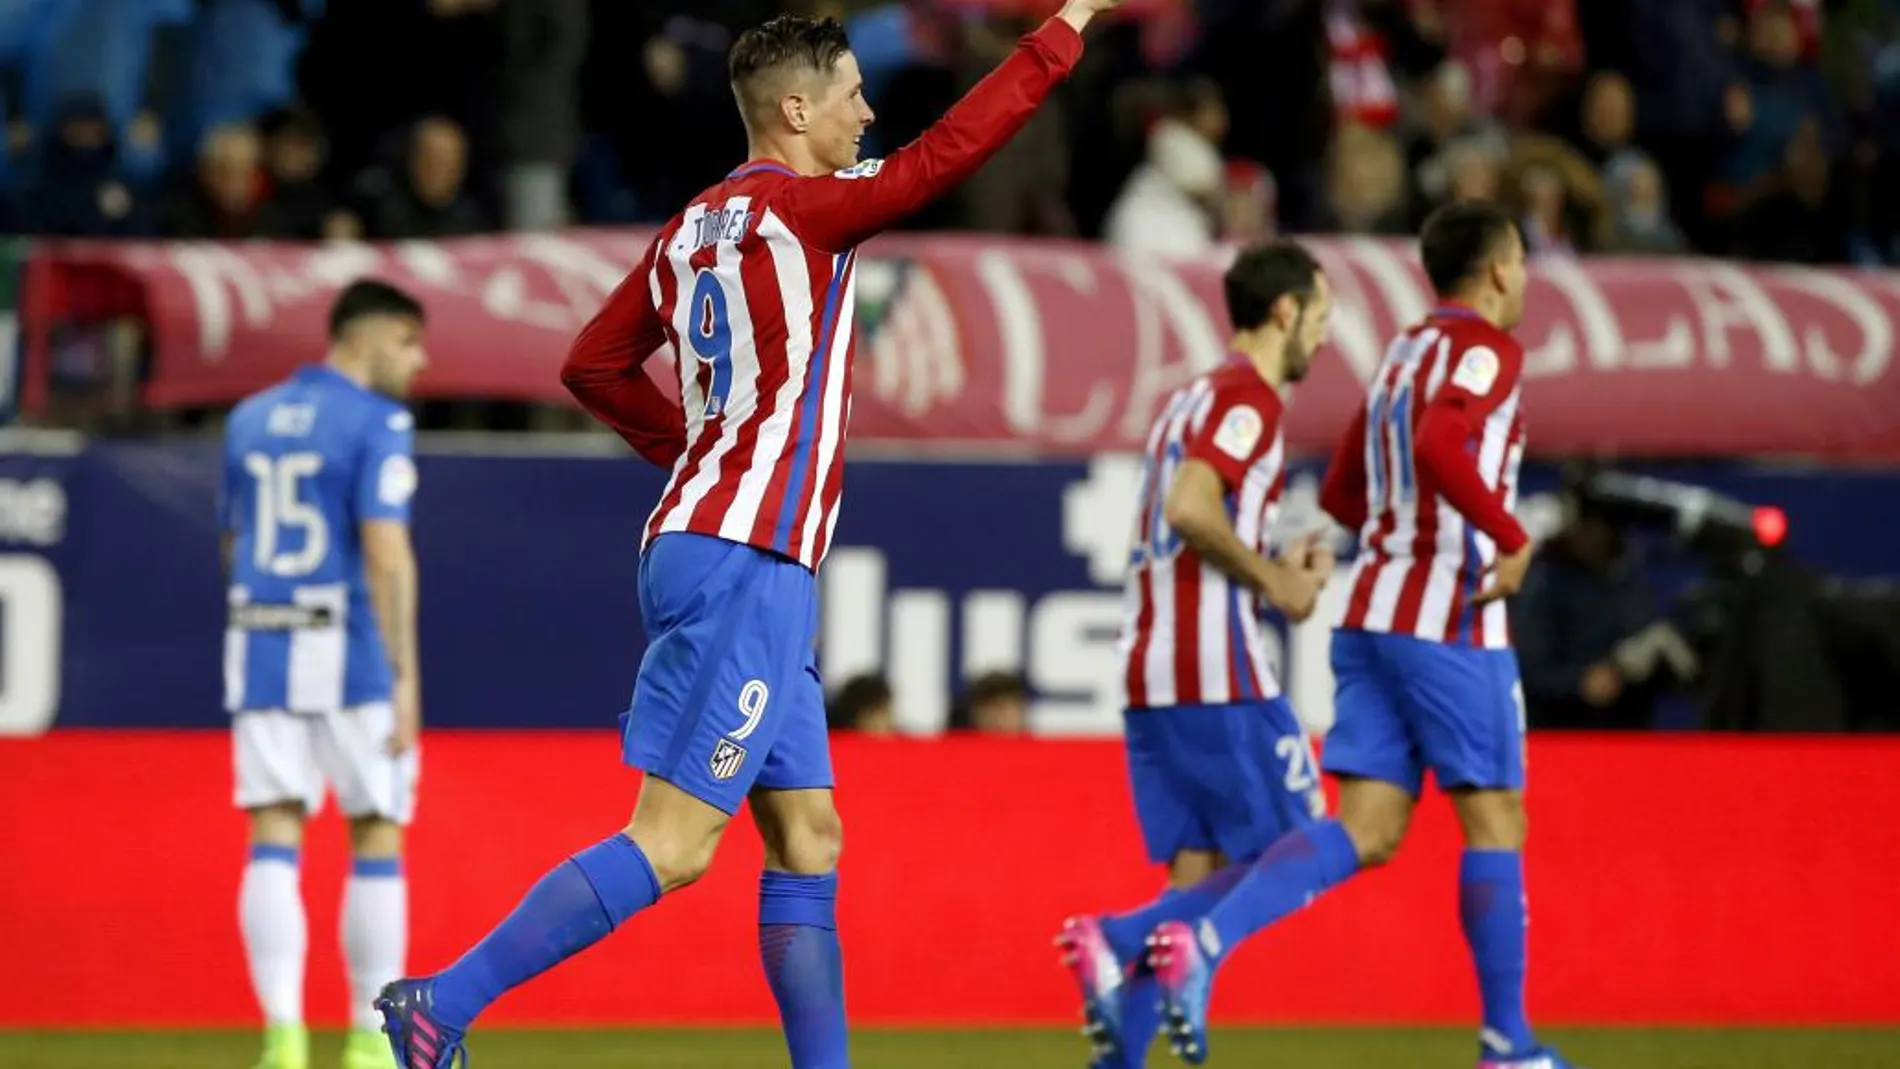 El delantero del Atlético de Madrid Fernando Torres celebra uno de sus goles frente al Leganés